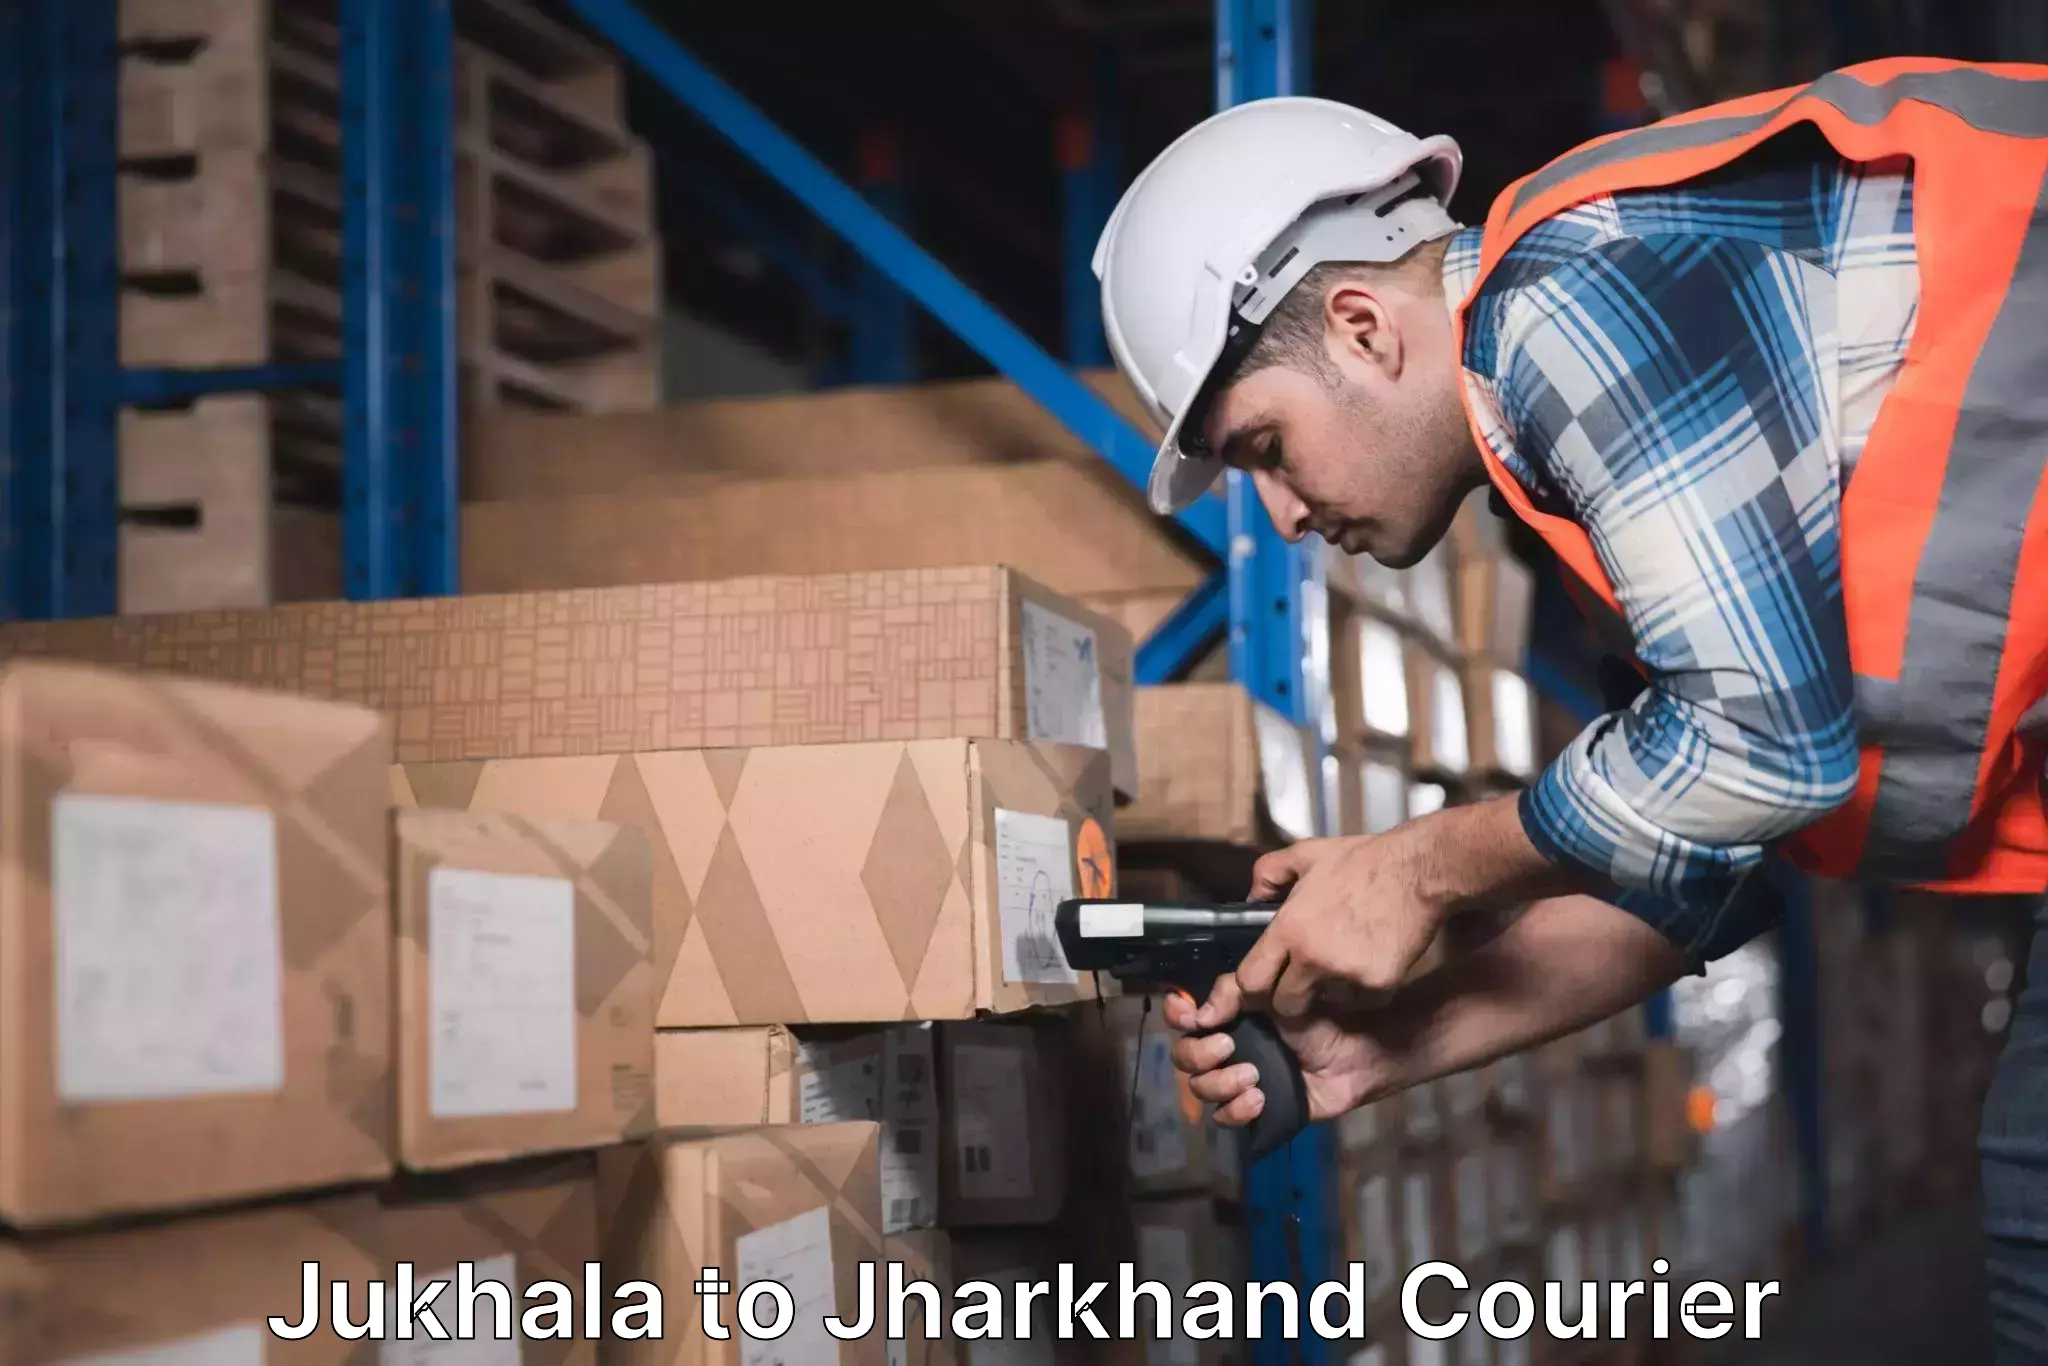 Courier app Jukhala to Palamu